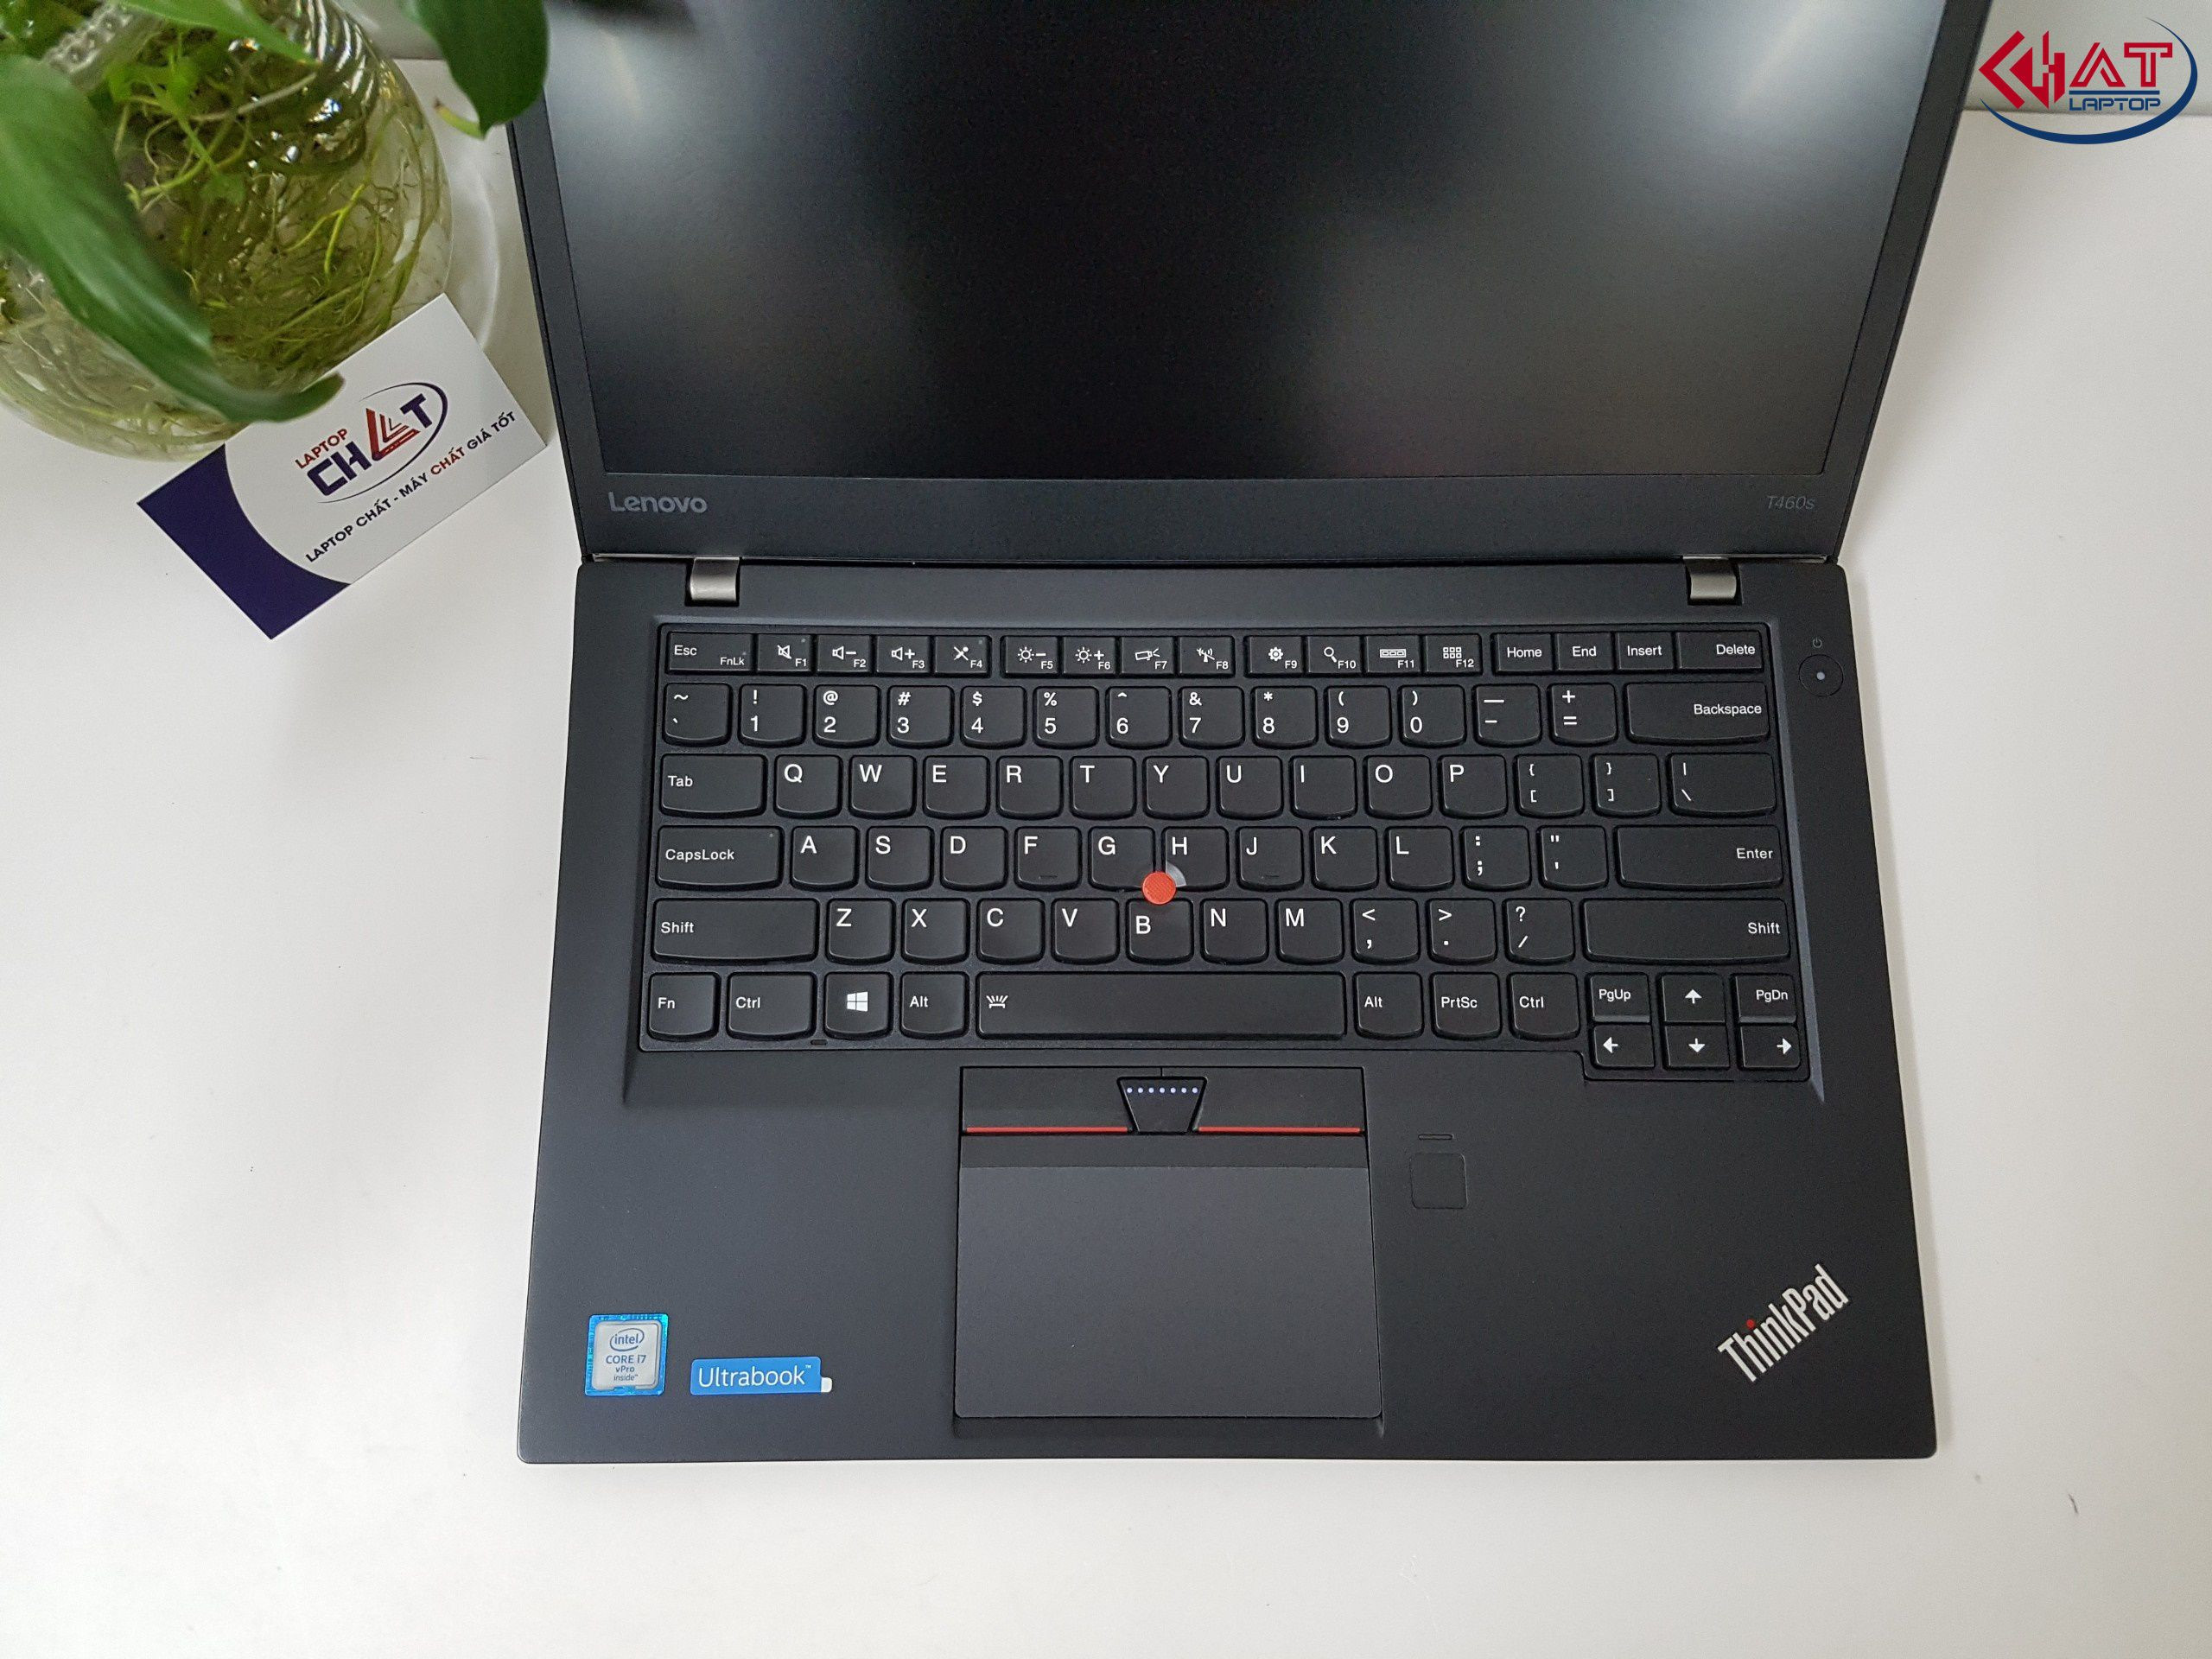 Lenovo Thinkpad T460s i7